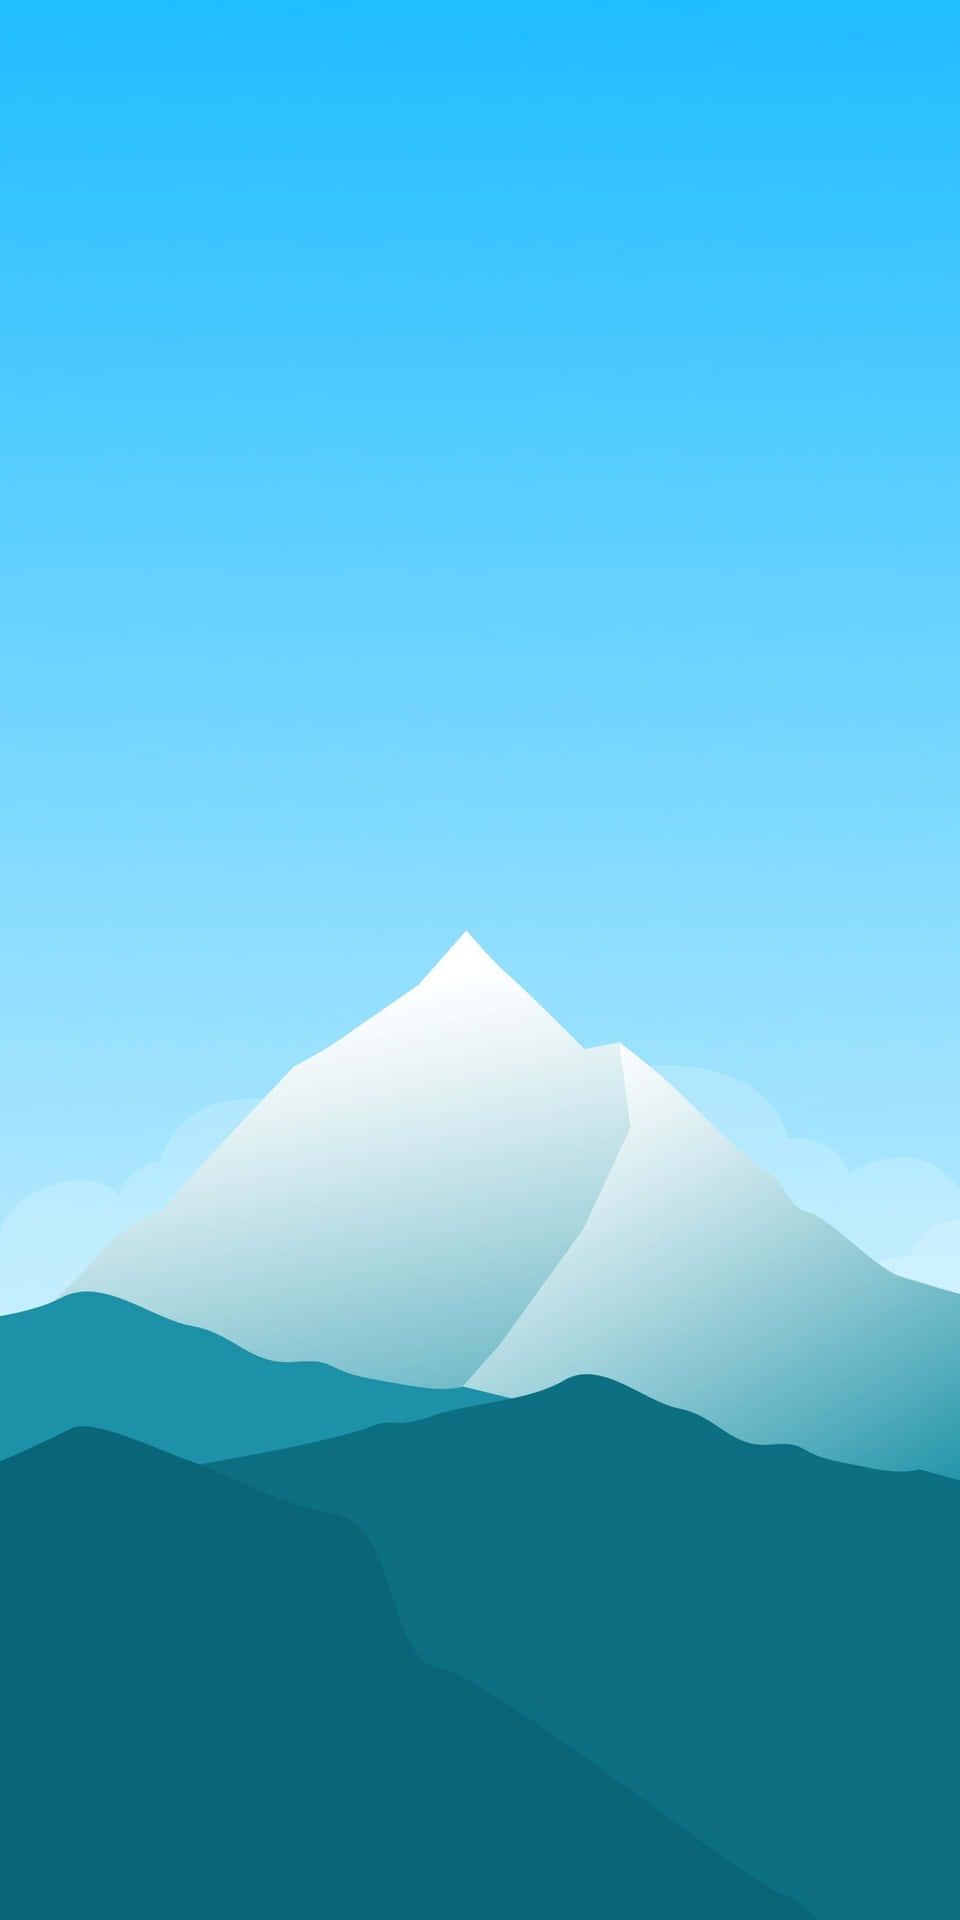 Sfondominimal Per Pixel 3, Tonalità Leggera Blu-bianco Con Montagna